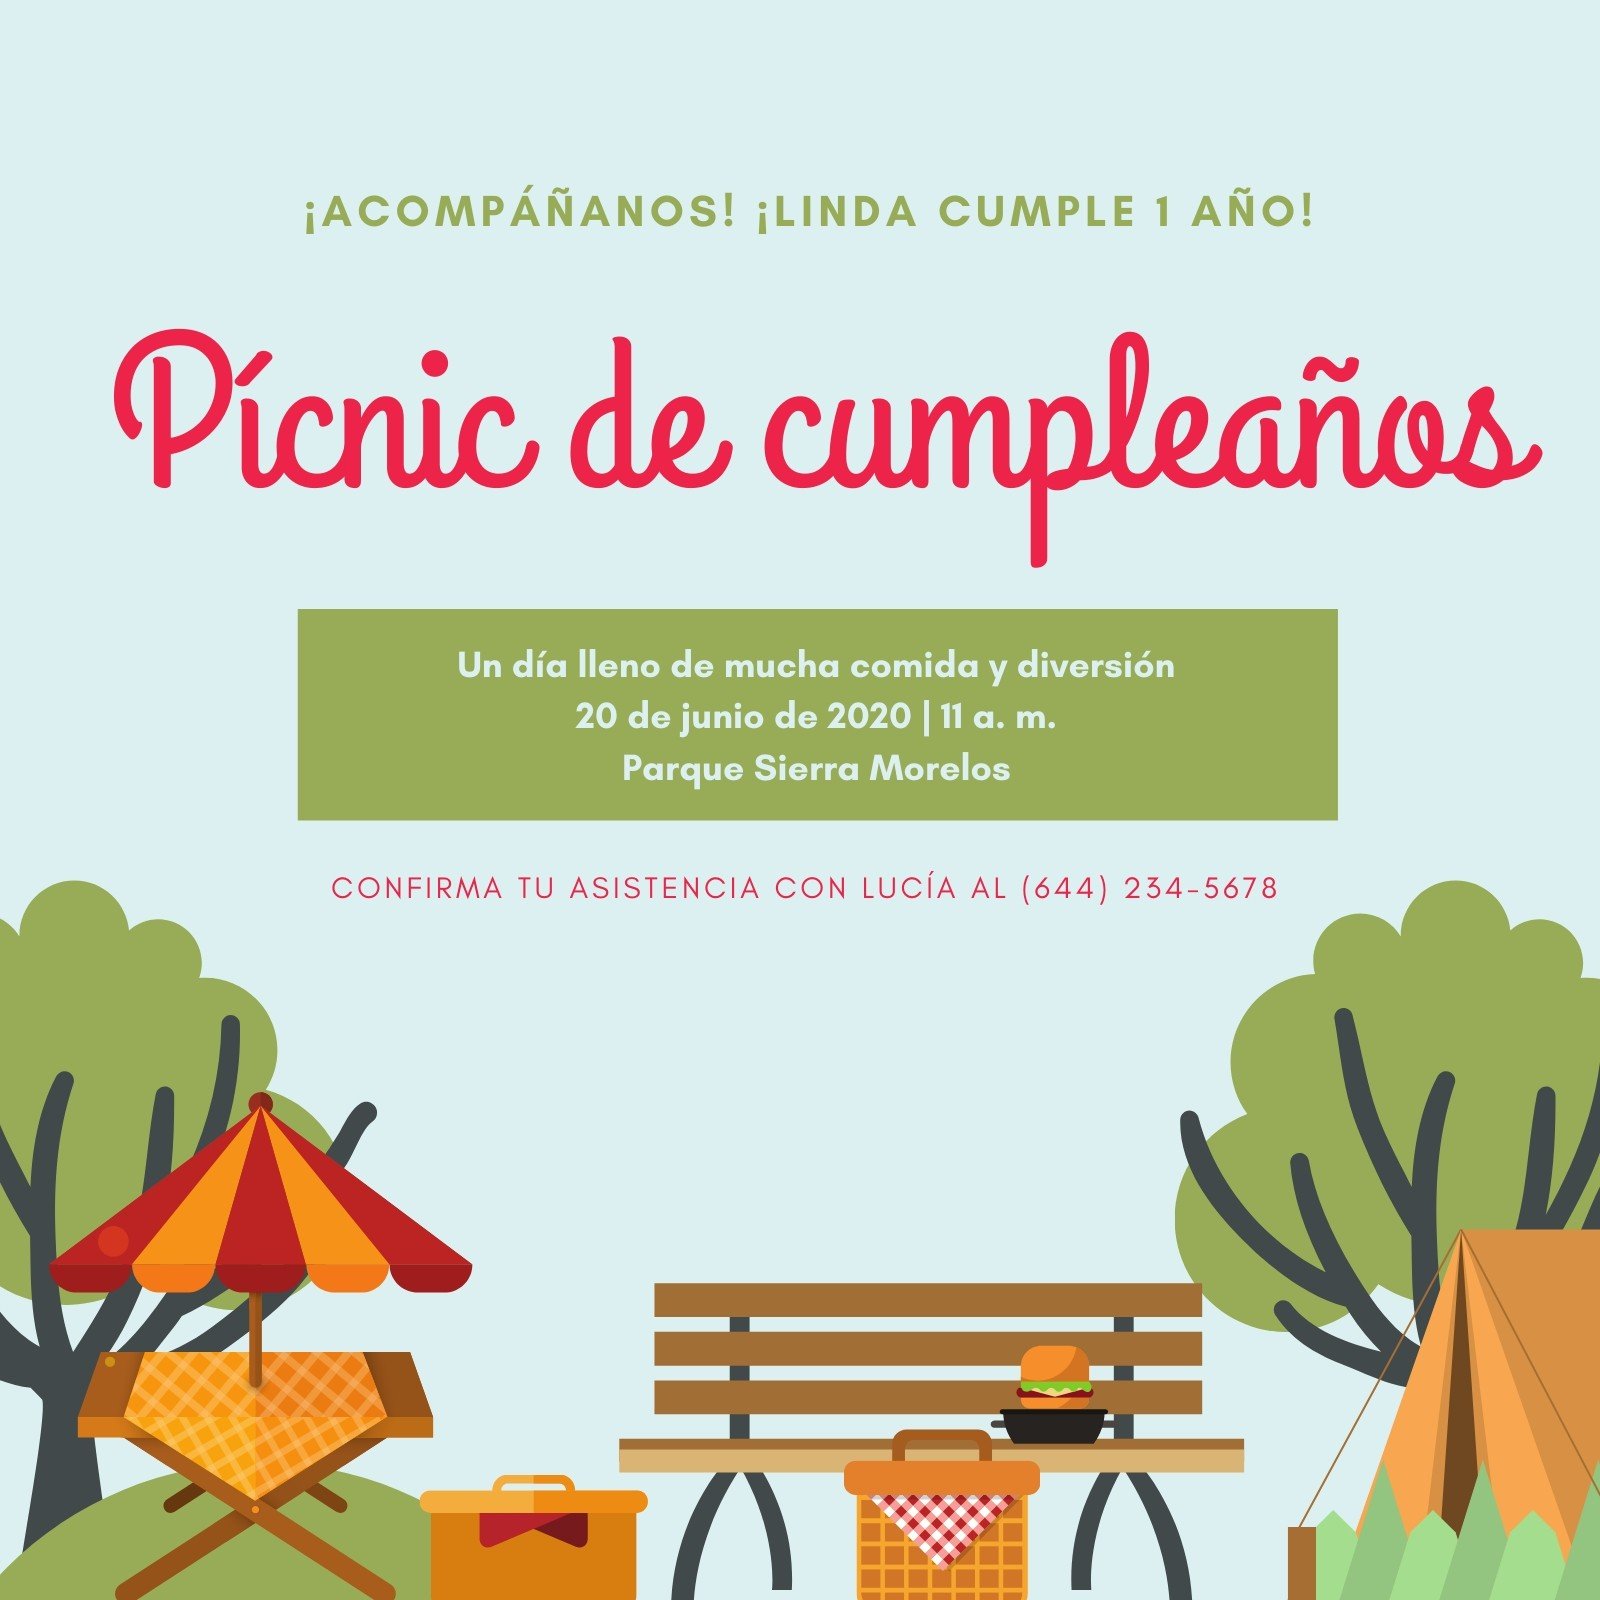 arriba-63-images-tarjetas-de-cumplea-os-picnic-gratis-viaterra-mx